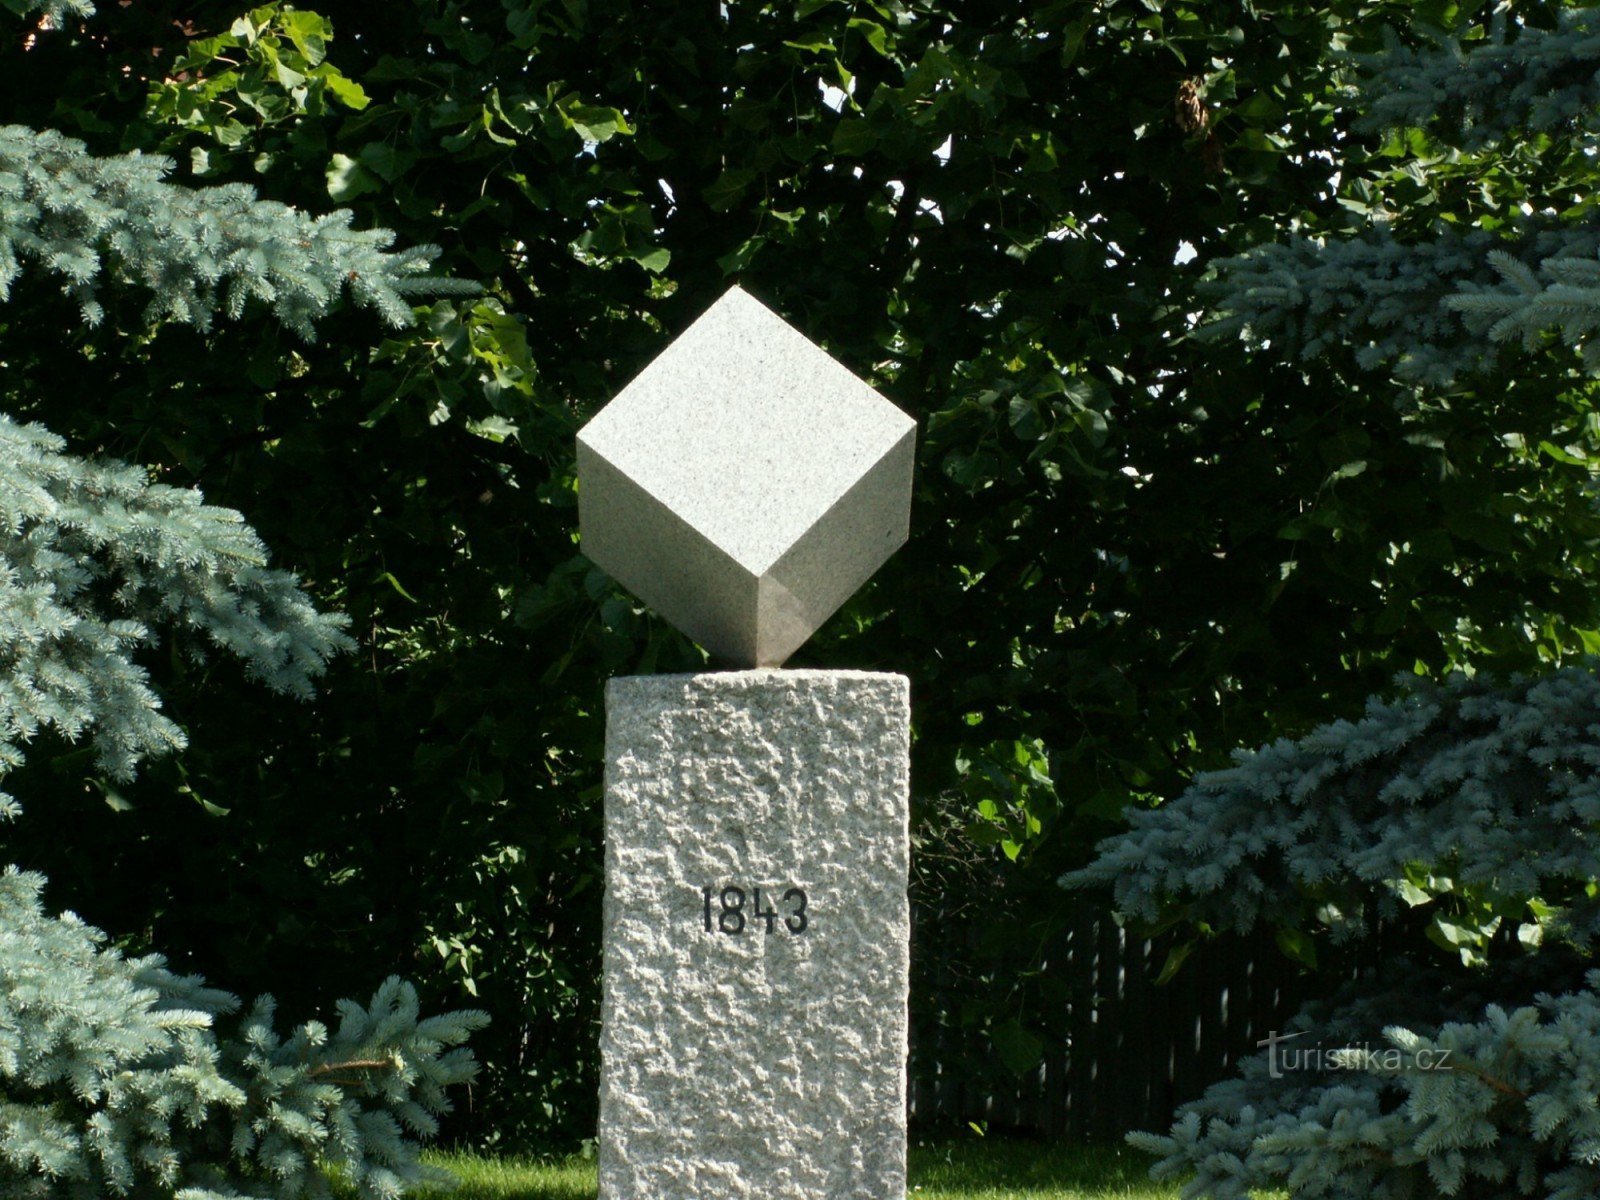 Ezt a gránit emlékművet 1983-ban állították fel